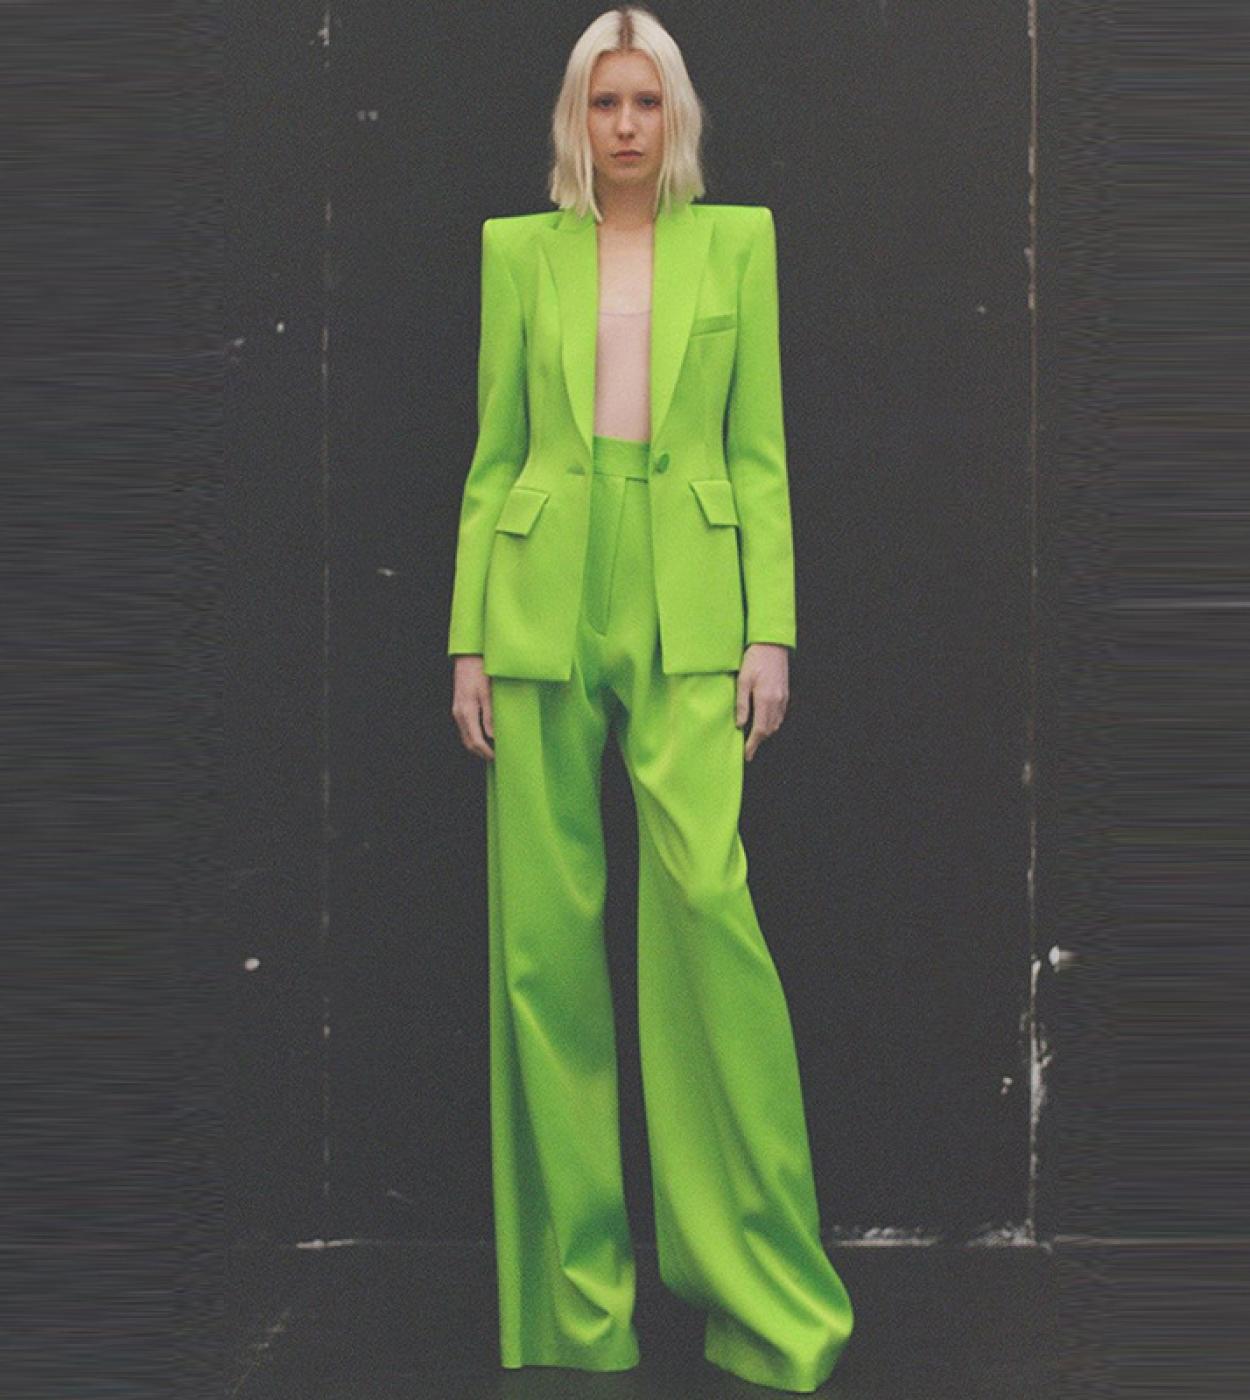 Pantsuit Suits Blazer Women Green New Design Single Button Wide Leg Pants Two Piece Sets Office Business Female Suit Out